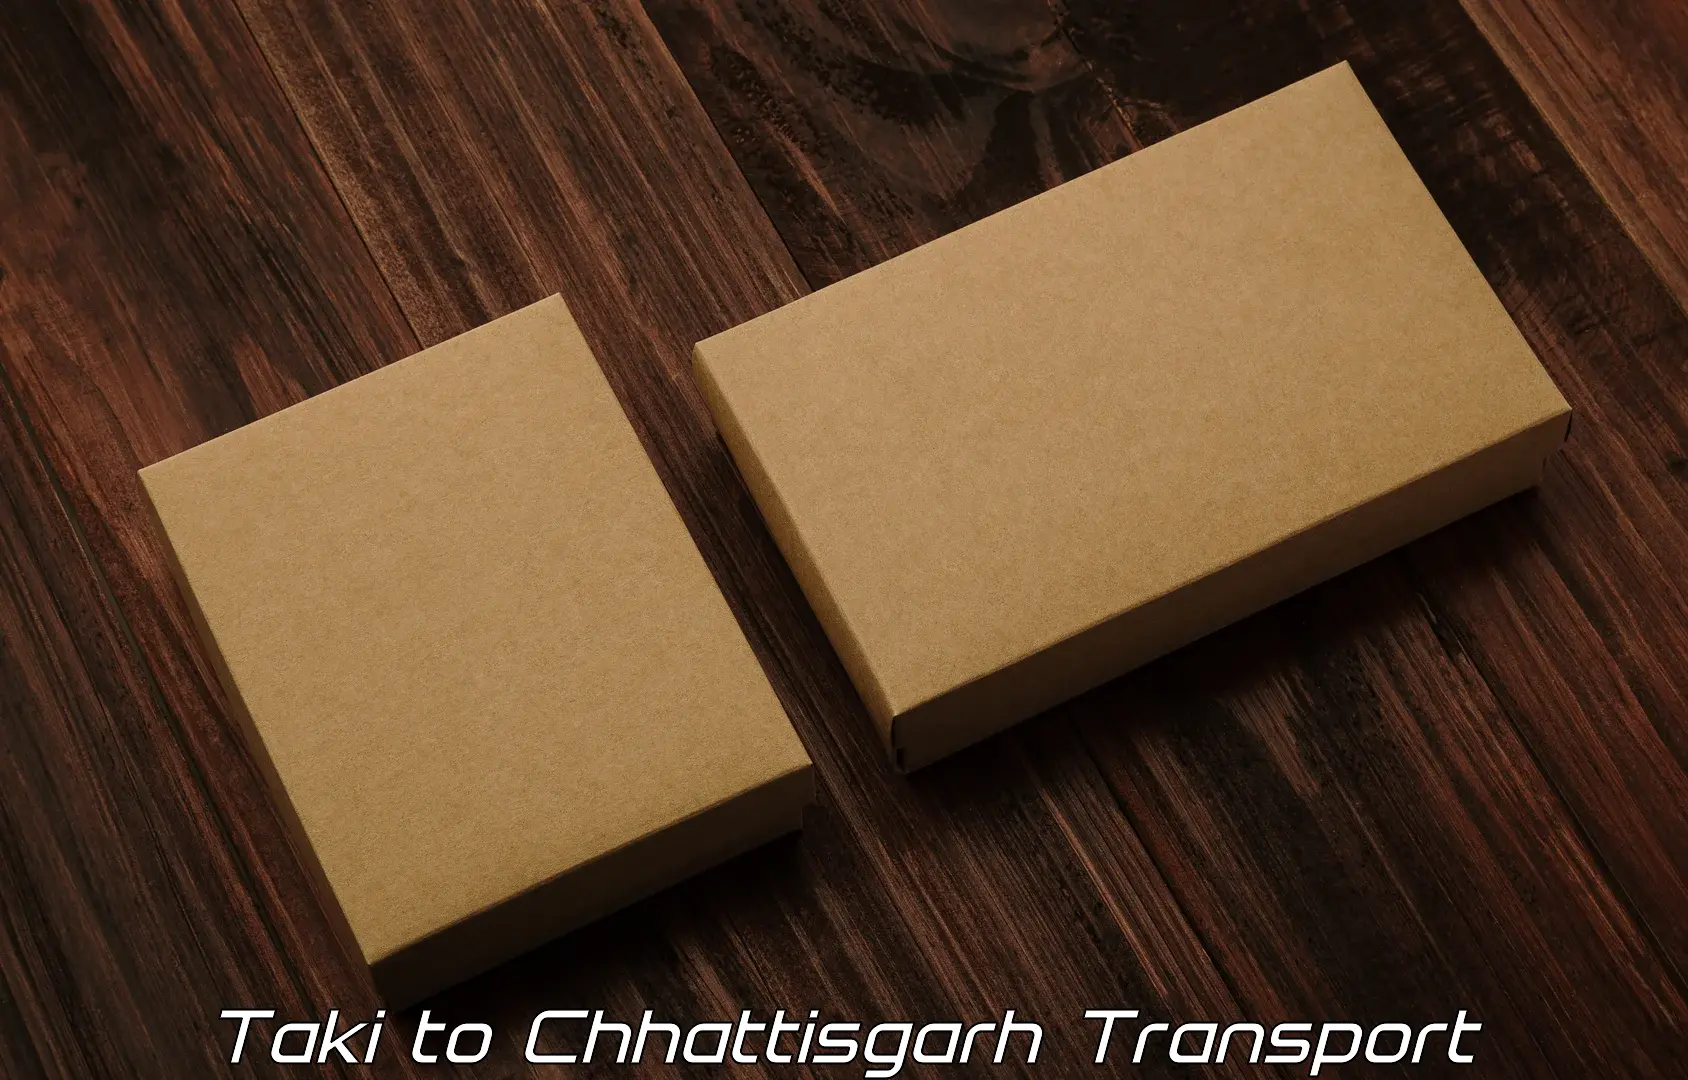 Goods delivery service Taki to Patna Chhattisgarh